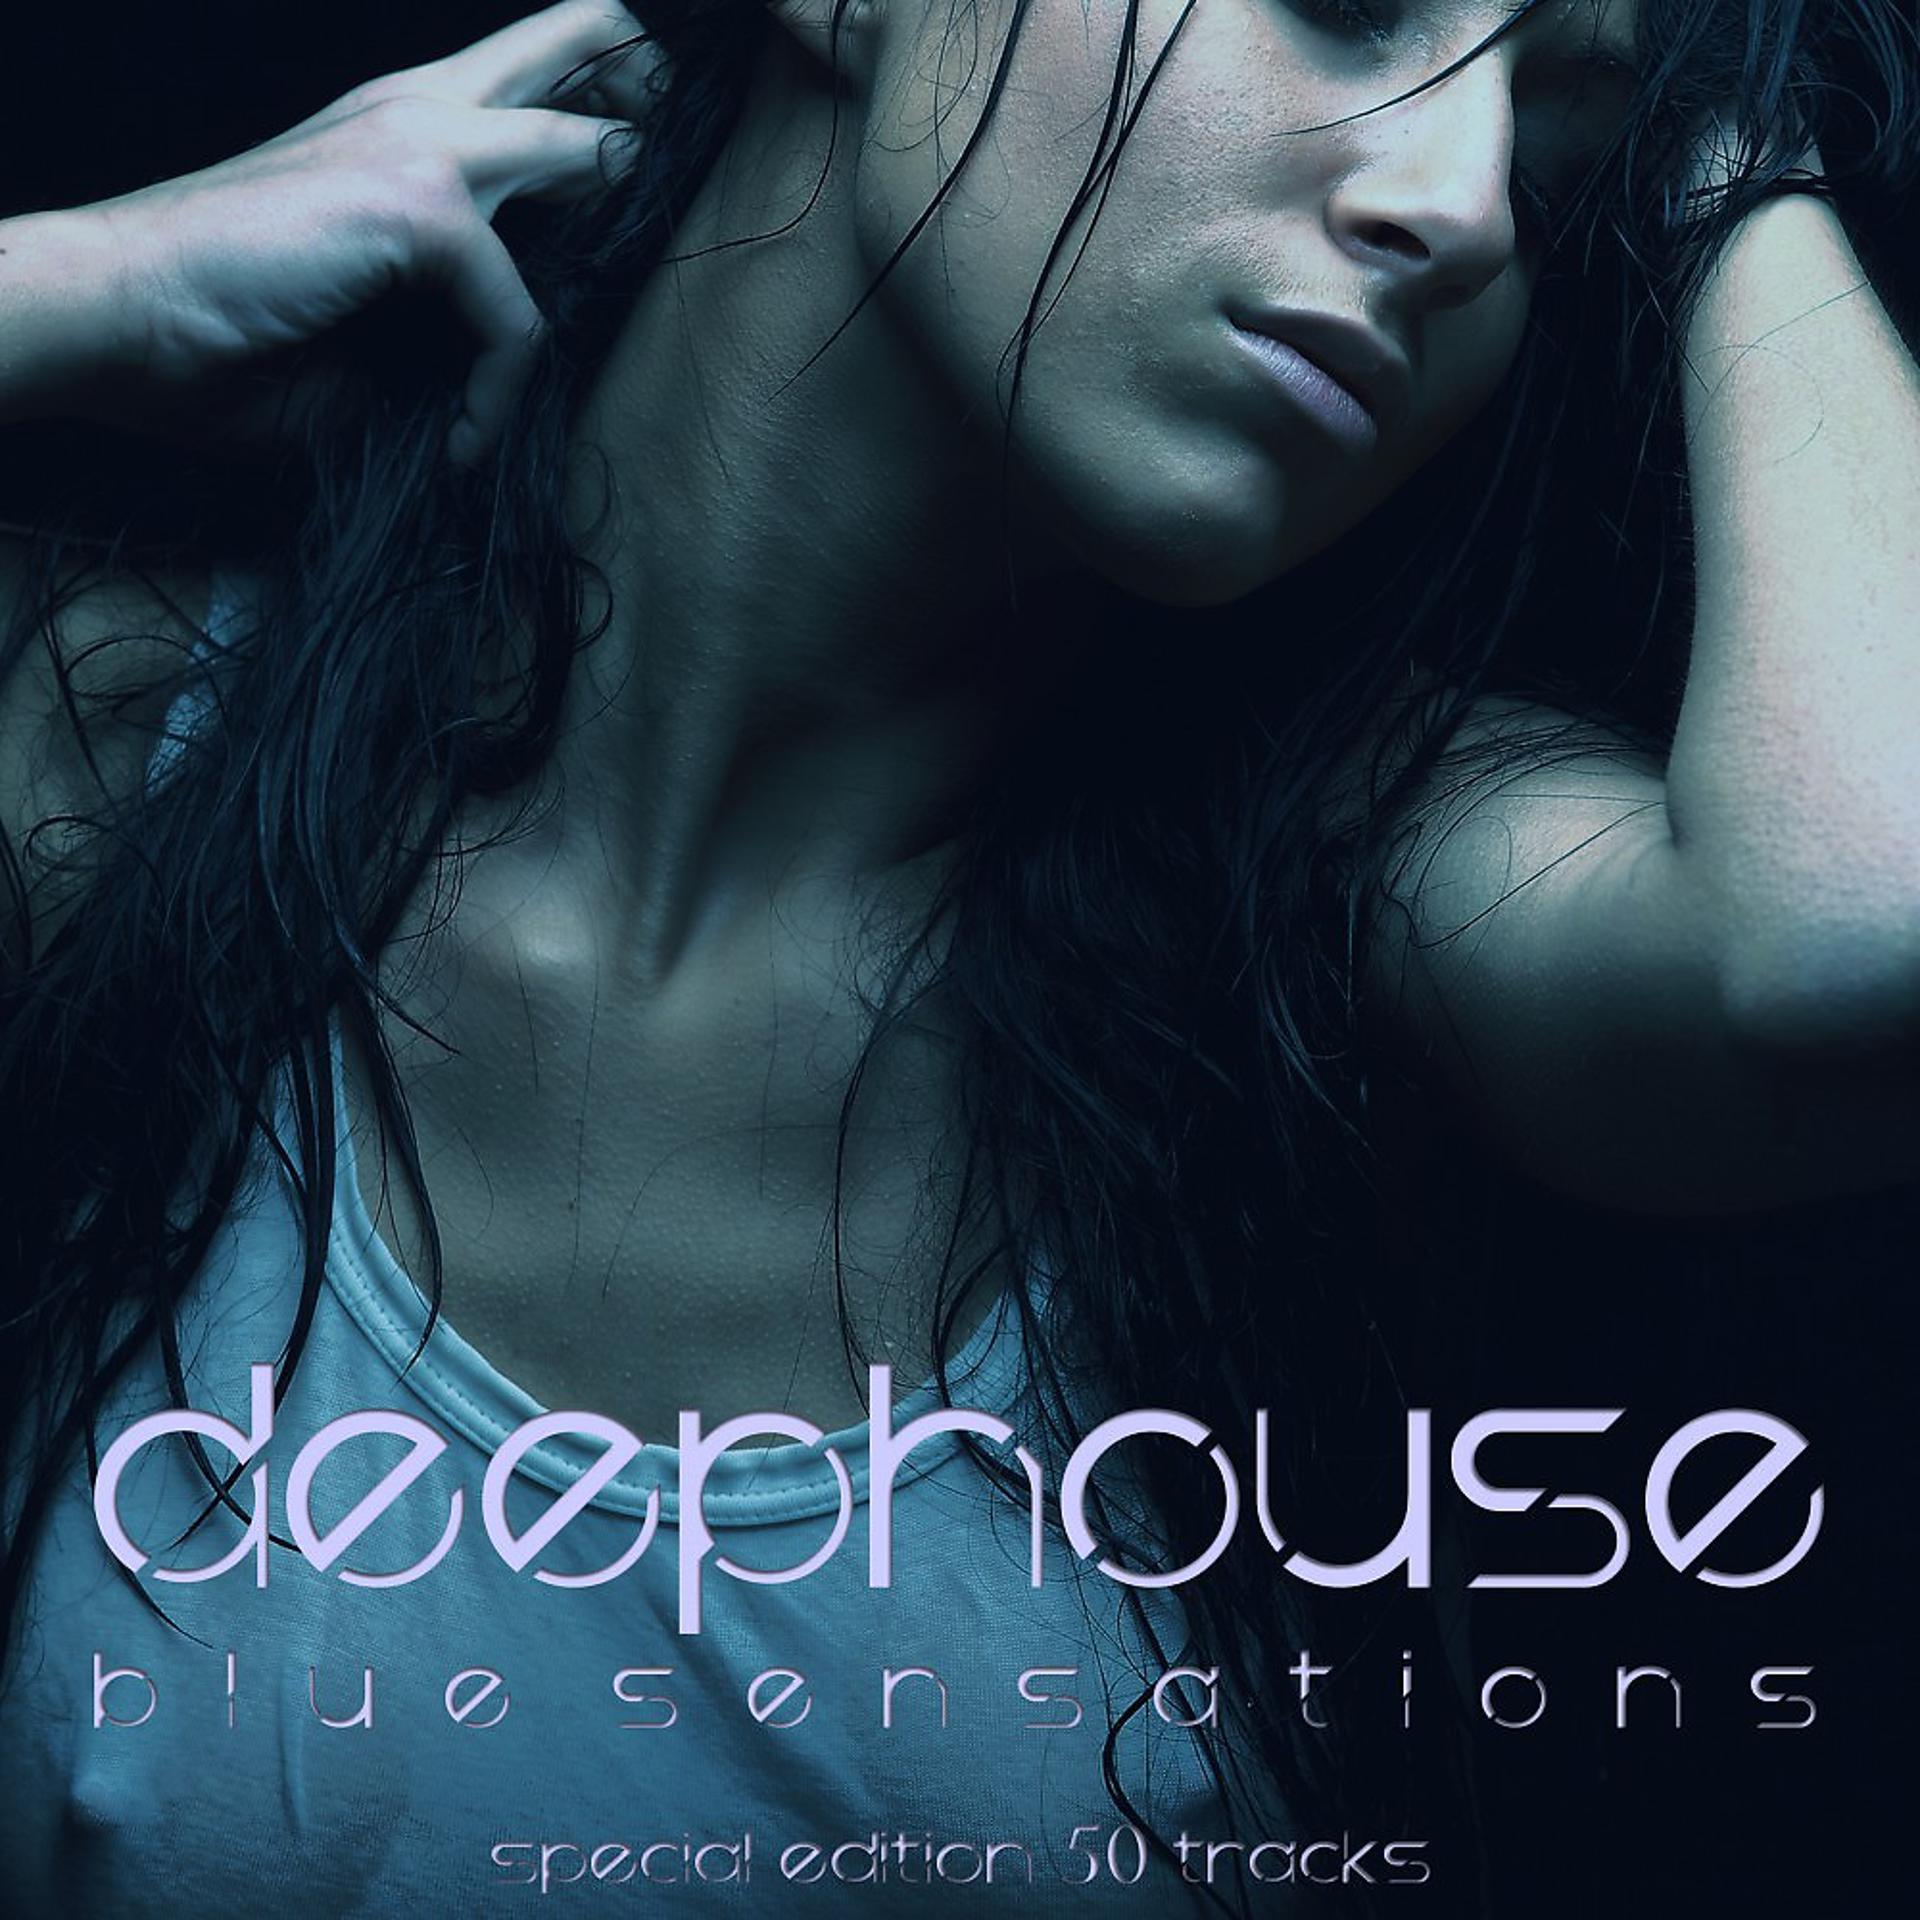 Слушать новинки музыки дип. Deep House. Deep House обложка. Deep House обложка альбома. Обложки музыкальных альбомов дип Хаус.